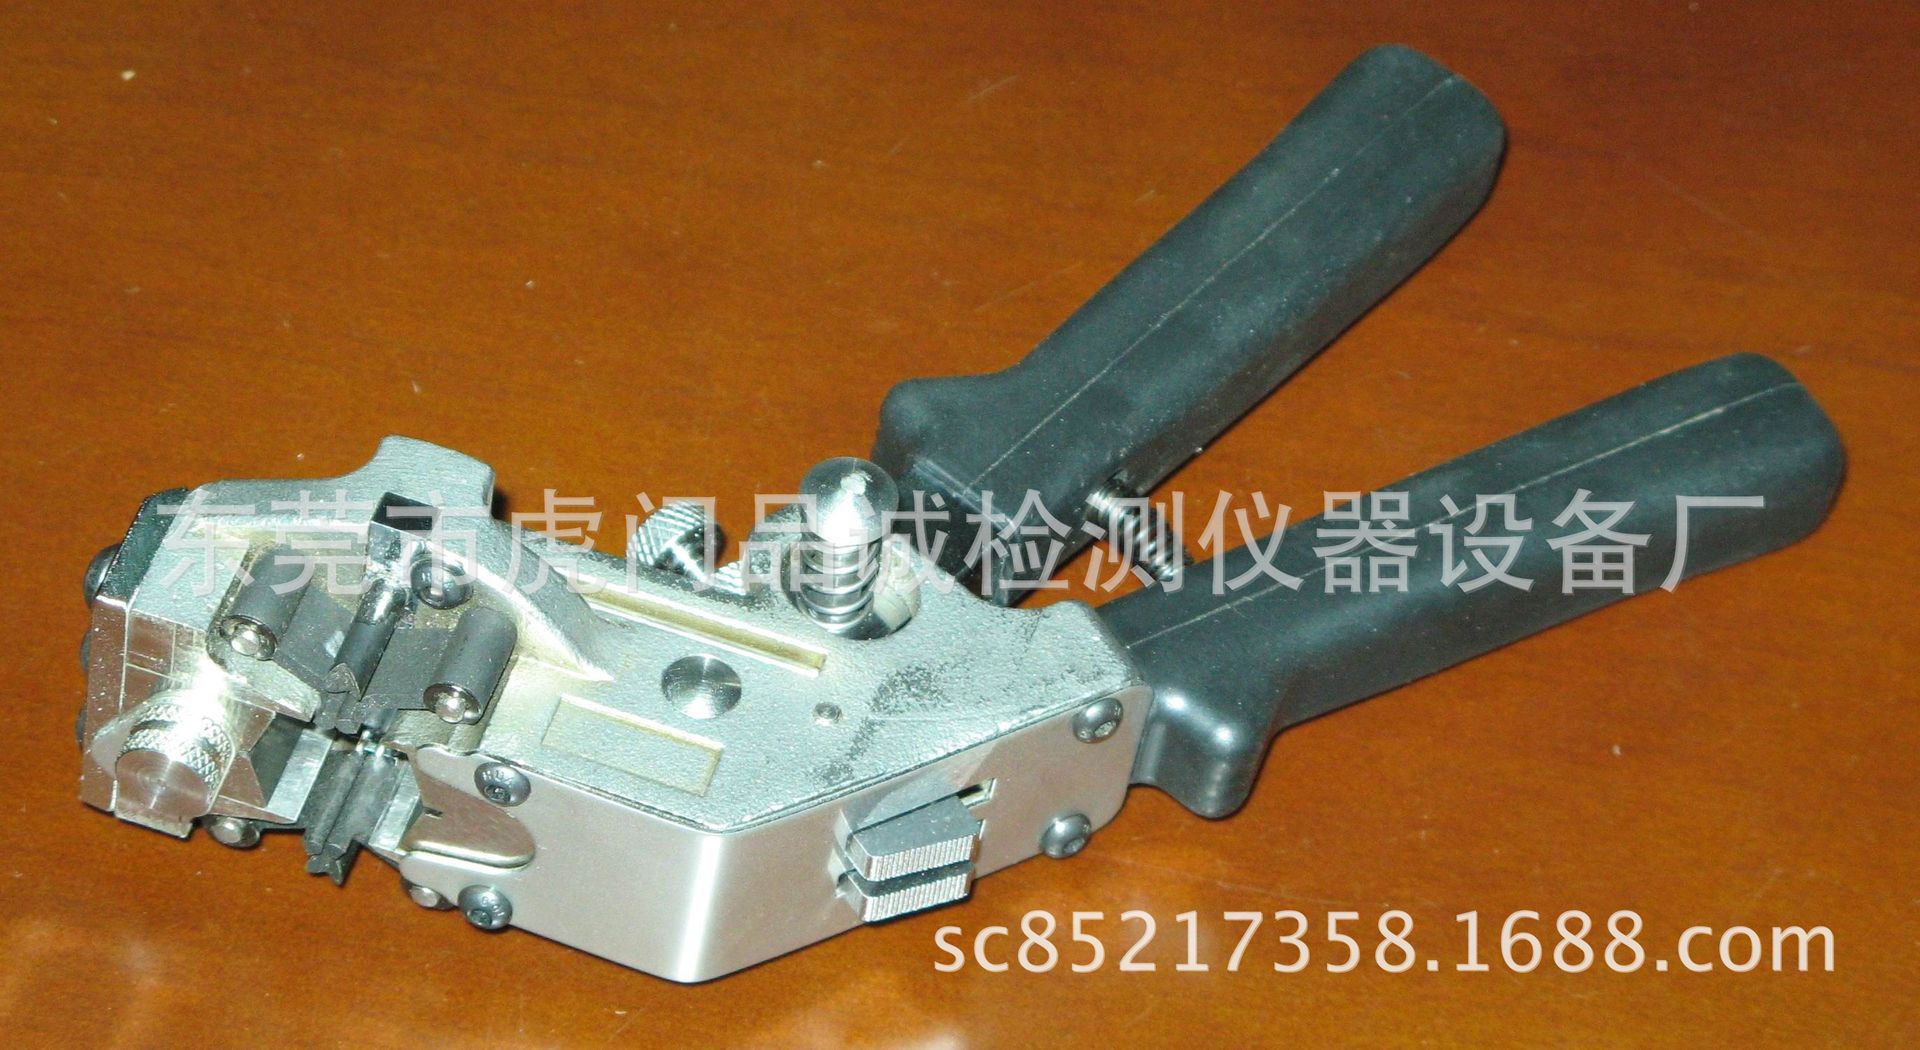 手持式冷焊机 铜线冷焊机 品诚生产碰焊机 接线机示例图7